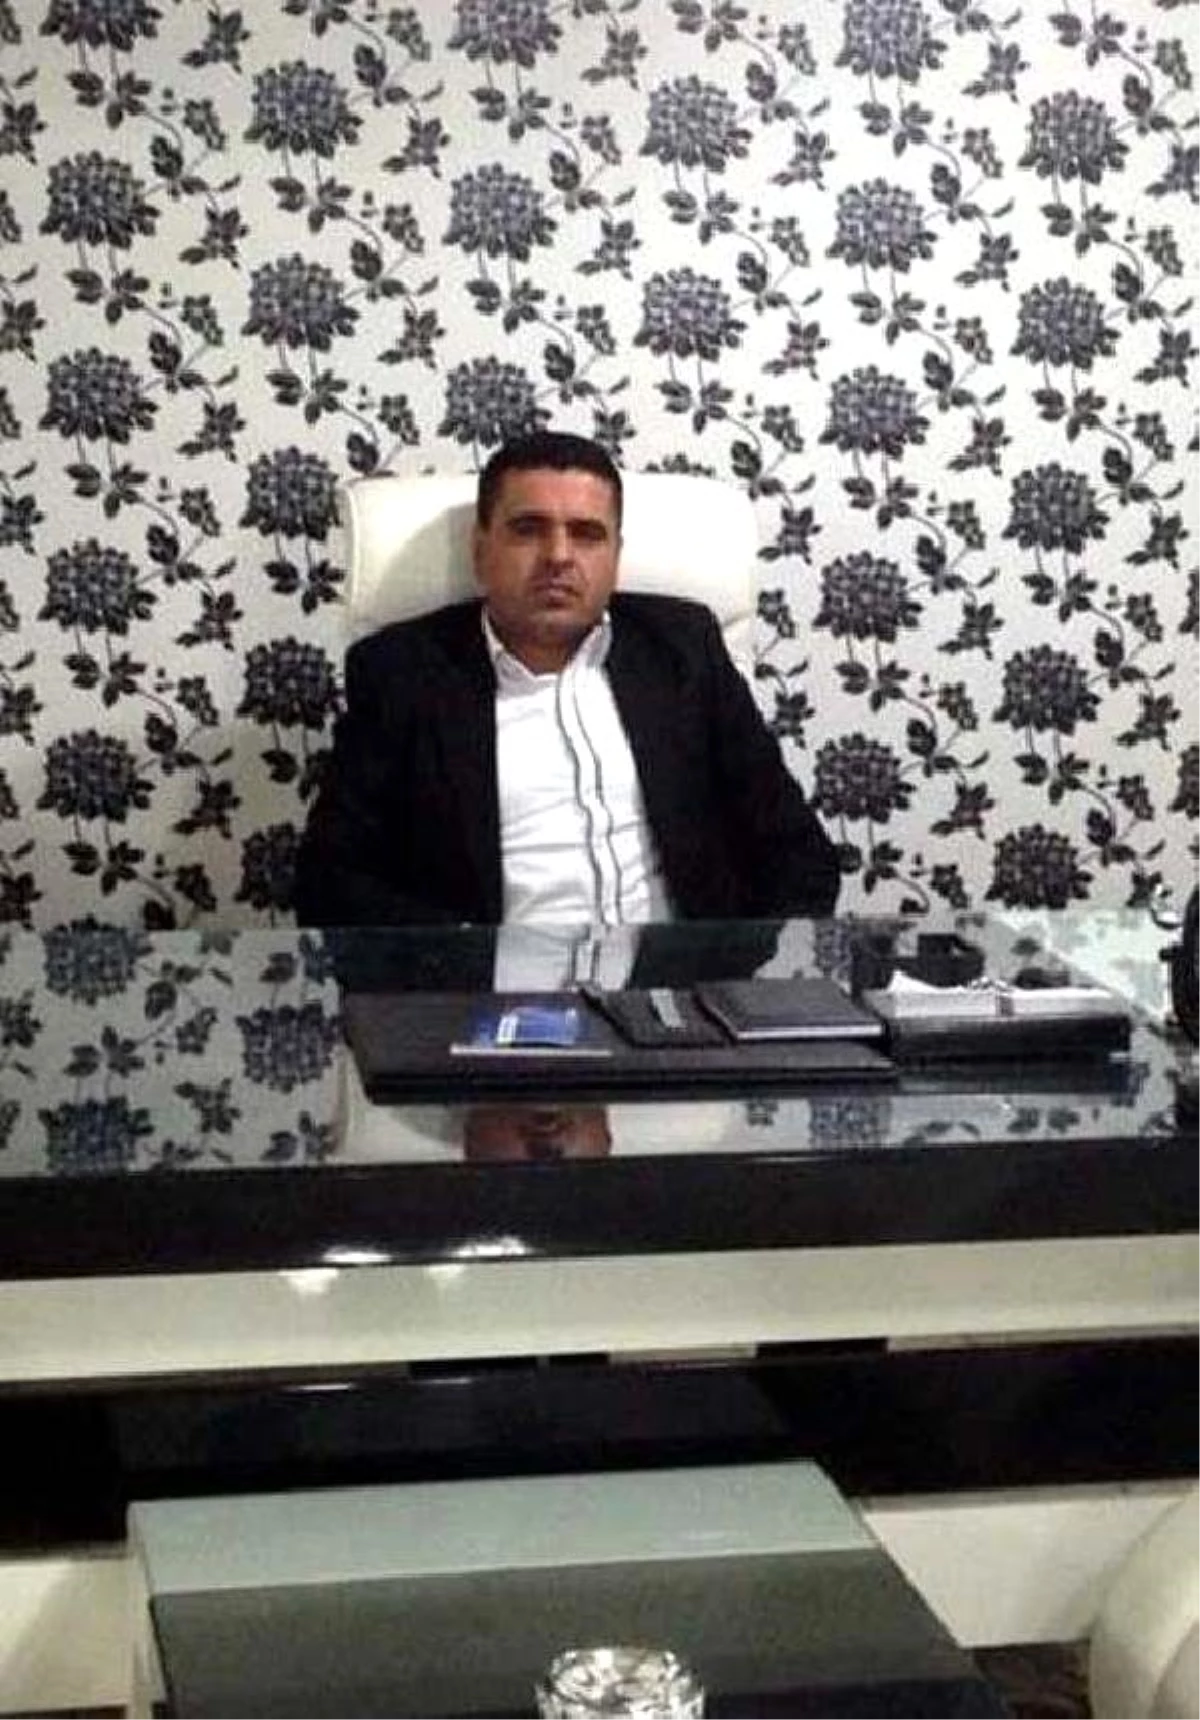 MHP Genel Başkanı Devlet Bahçeli Hakkında Suç Duyurusu